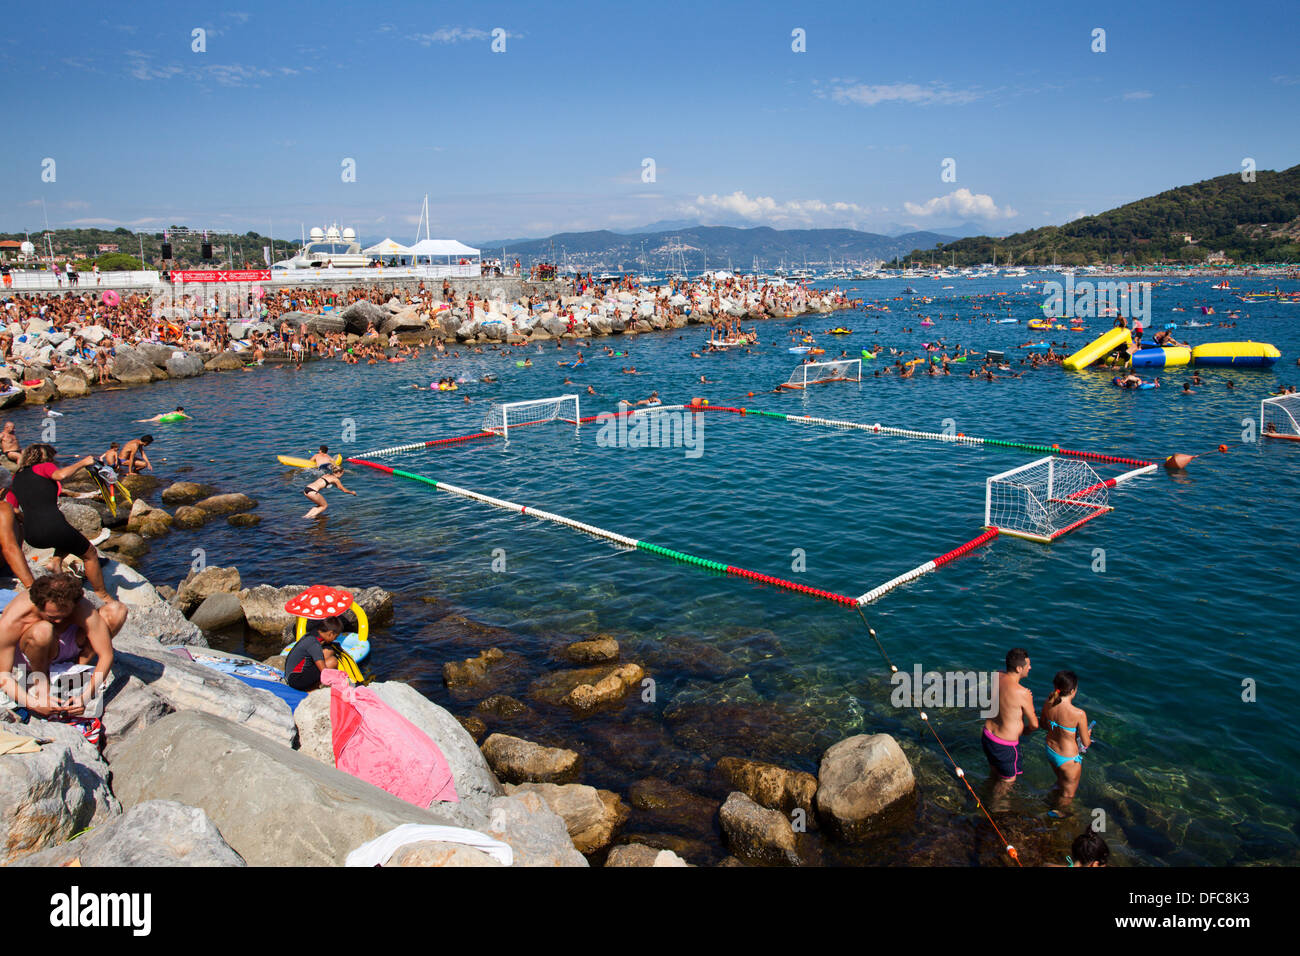 Wasserspiele auf der Piscina Naturale Veranstaltung zwischen Porto Venere und Insel Palmaria geschlossen Seeverkehr Ligurien Italien Stockfoto